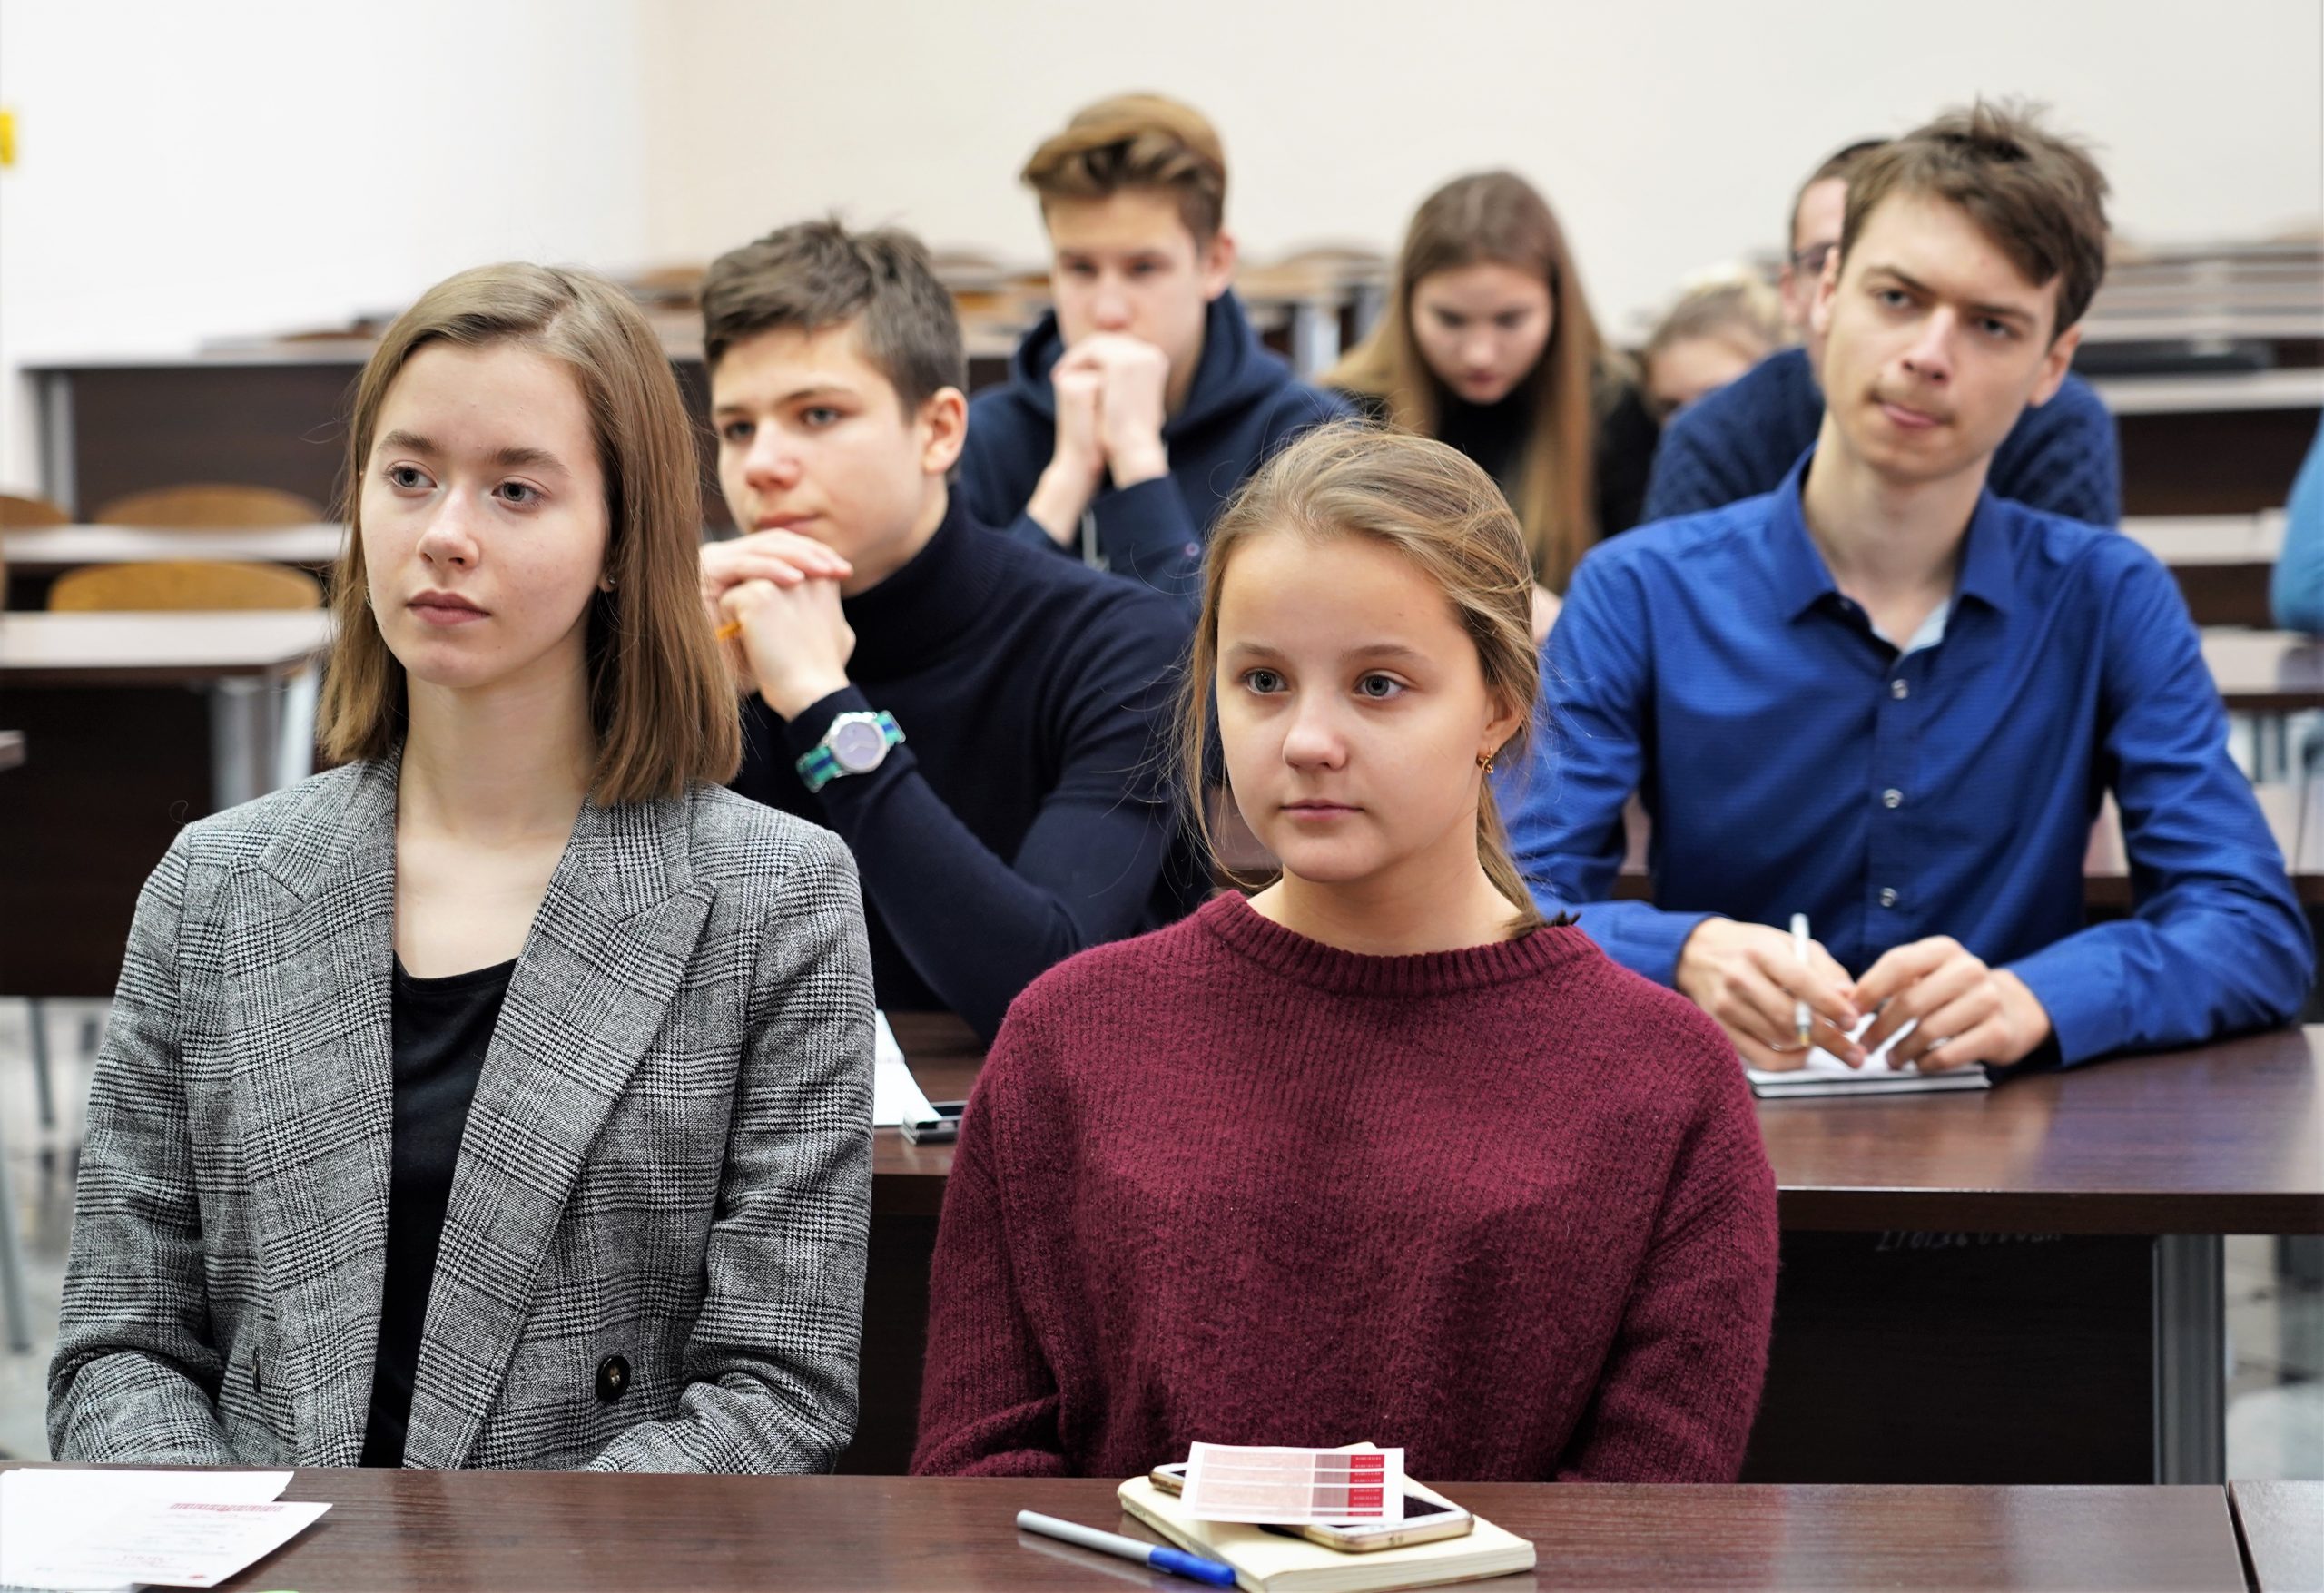 Активисты Молодежной палаты городского округа Щербинка организовали тематическую лекцию. Фото: Денис Кондратьев